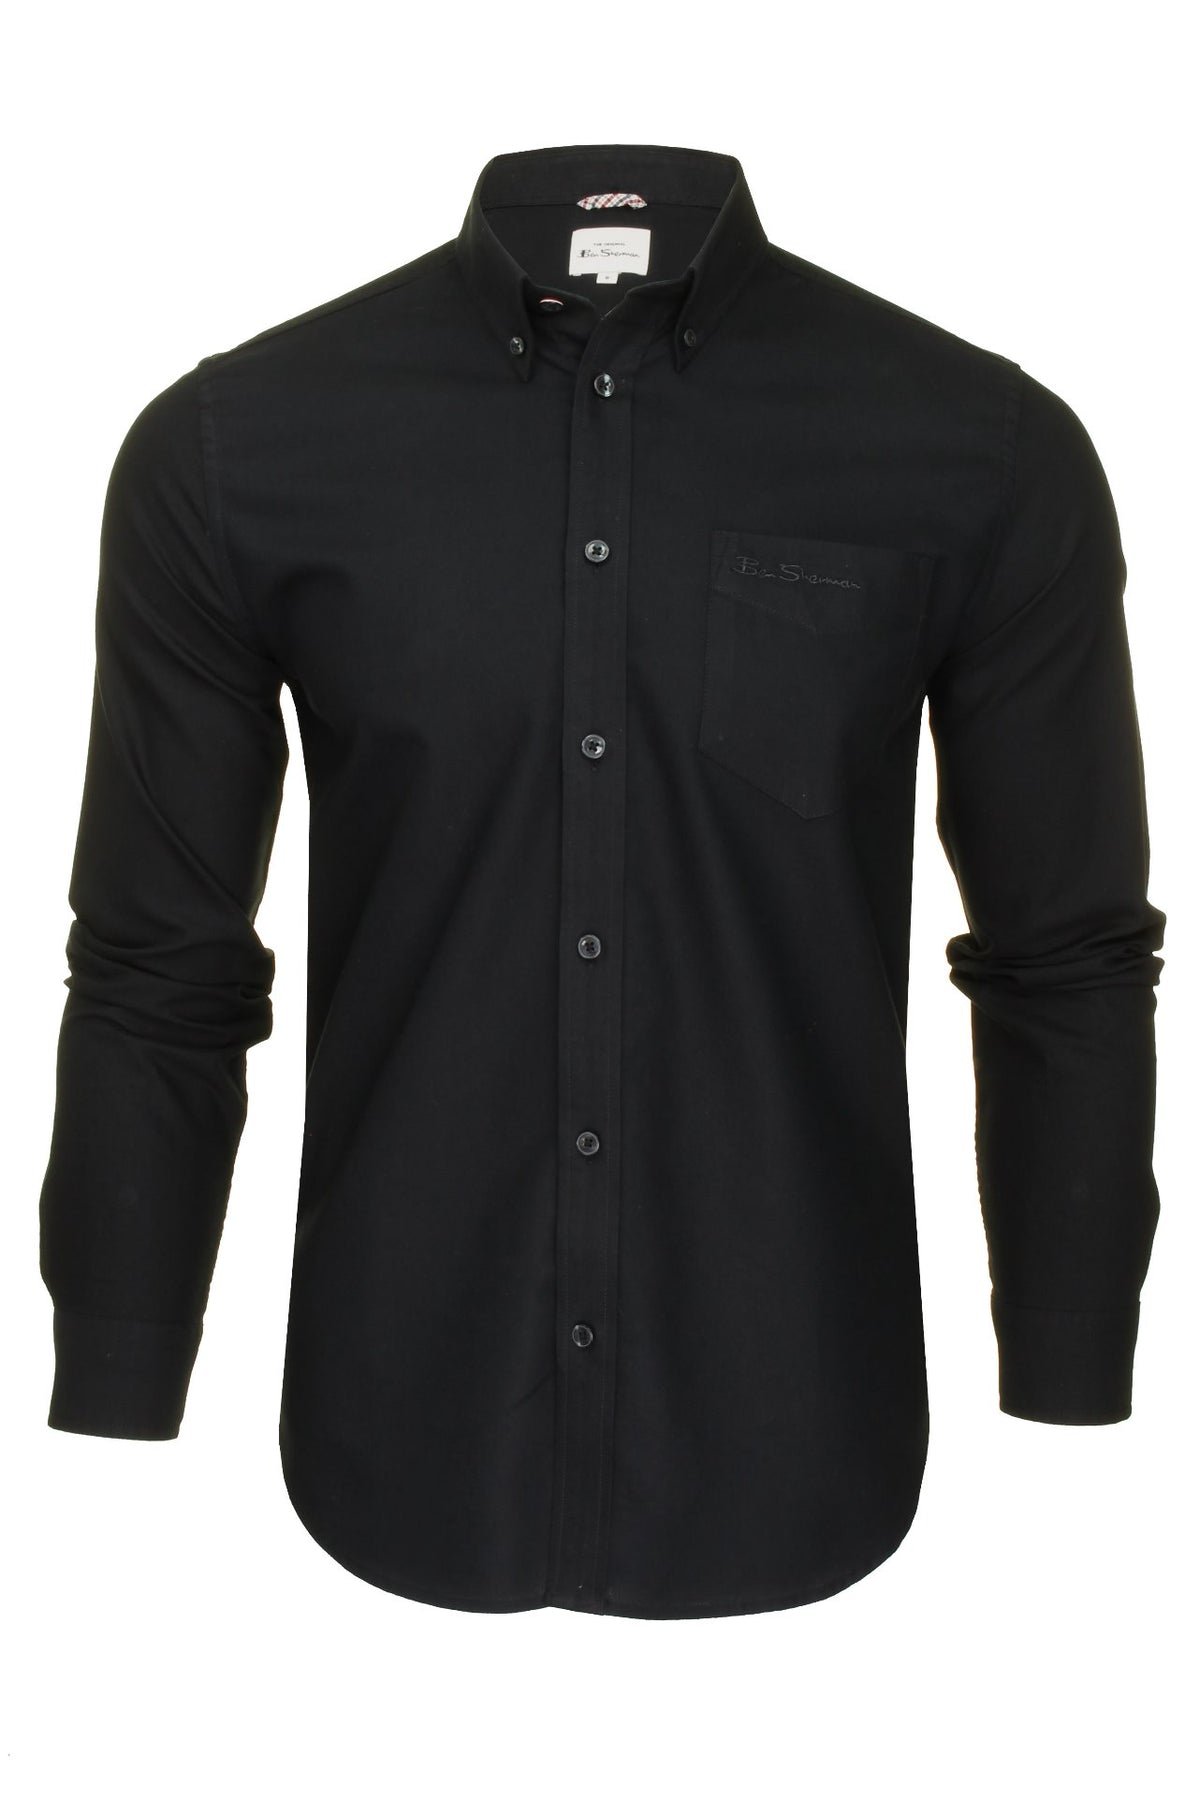 Ben Sherman Mens Oxford Shirt Long Sleeved (Embroidered Logo), 01, 48578, Black (Embroidered Pocket Logo)